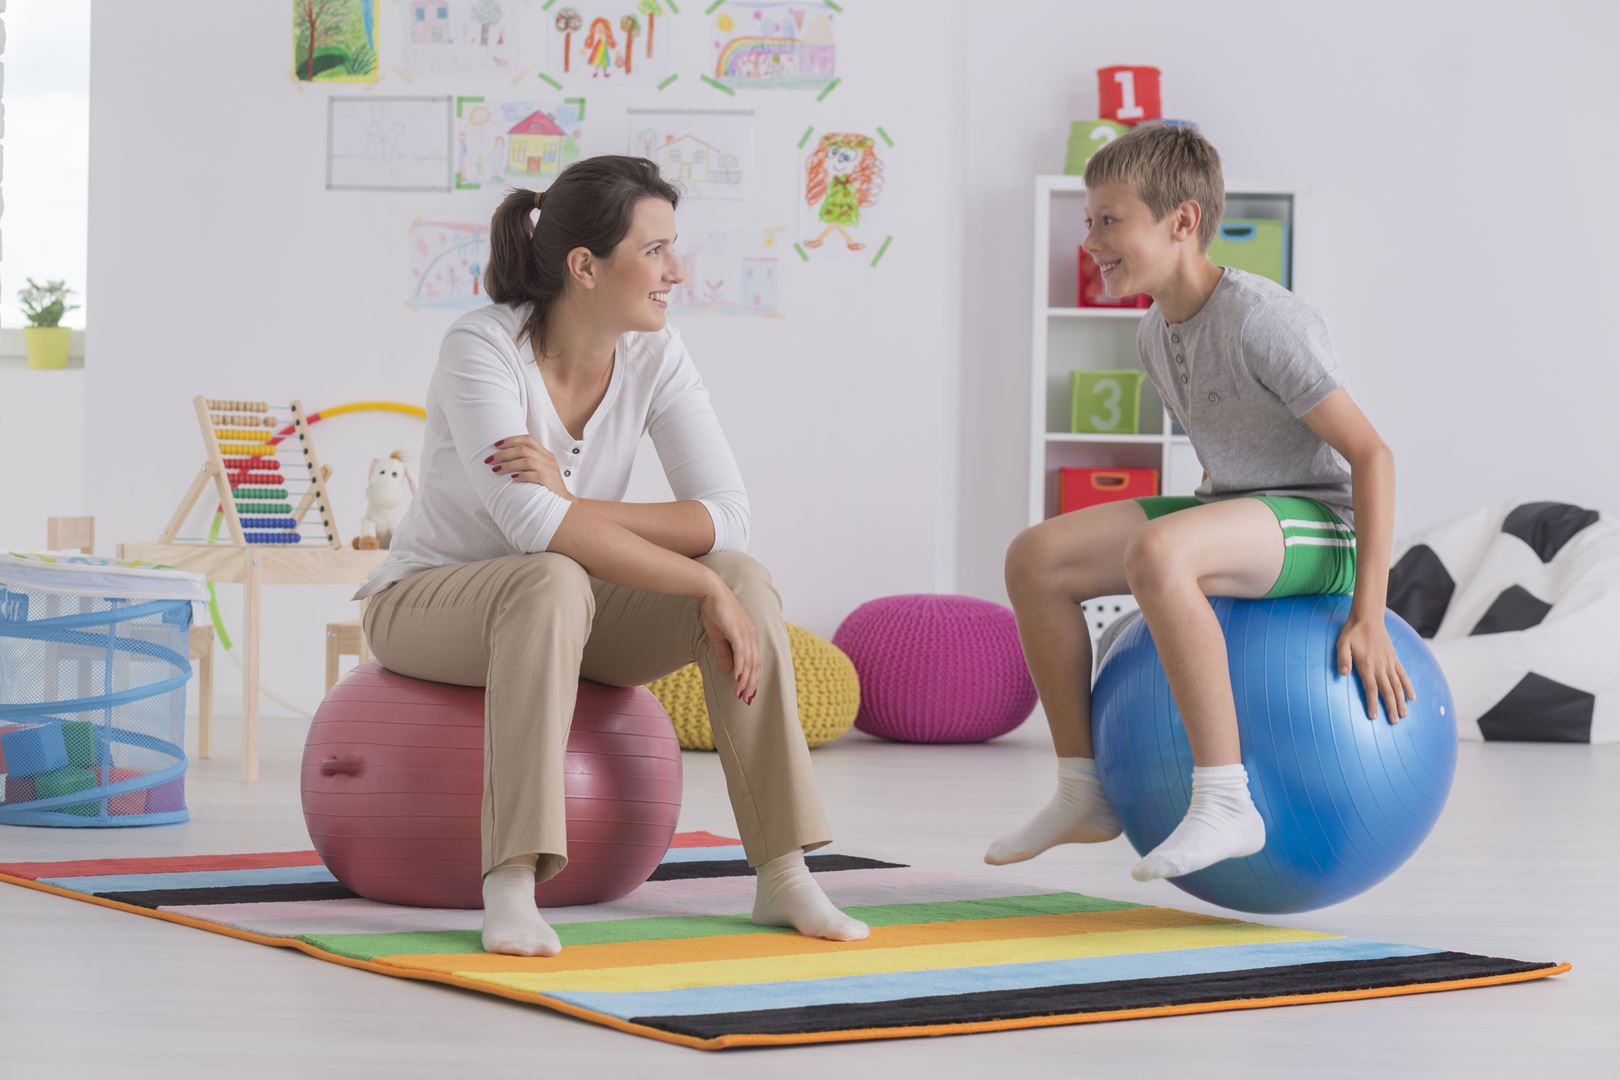 פיזיותרפיה לילדים בתל אביב - Junior Therapy, שירותי שיקום פרטיים לילדים ופעוטות